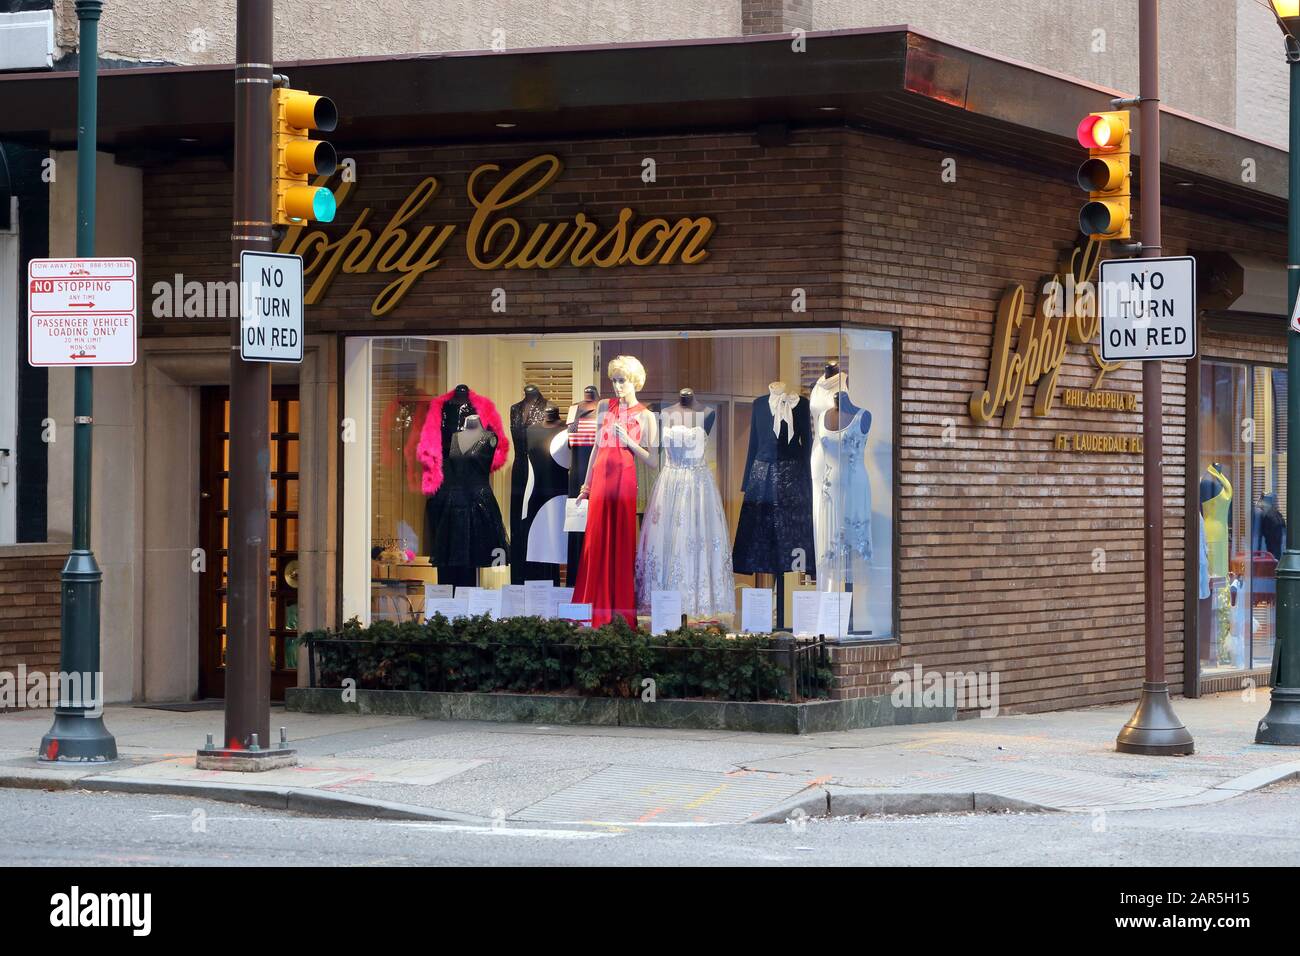 Sophy Curson, 122 S 19th St, Philadelphia, PA. Außenansicht der Modeboutique einer Frau auf dem Rittenhouse Square. Stockfoto